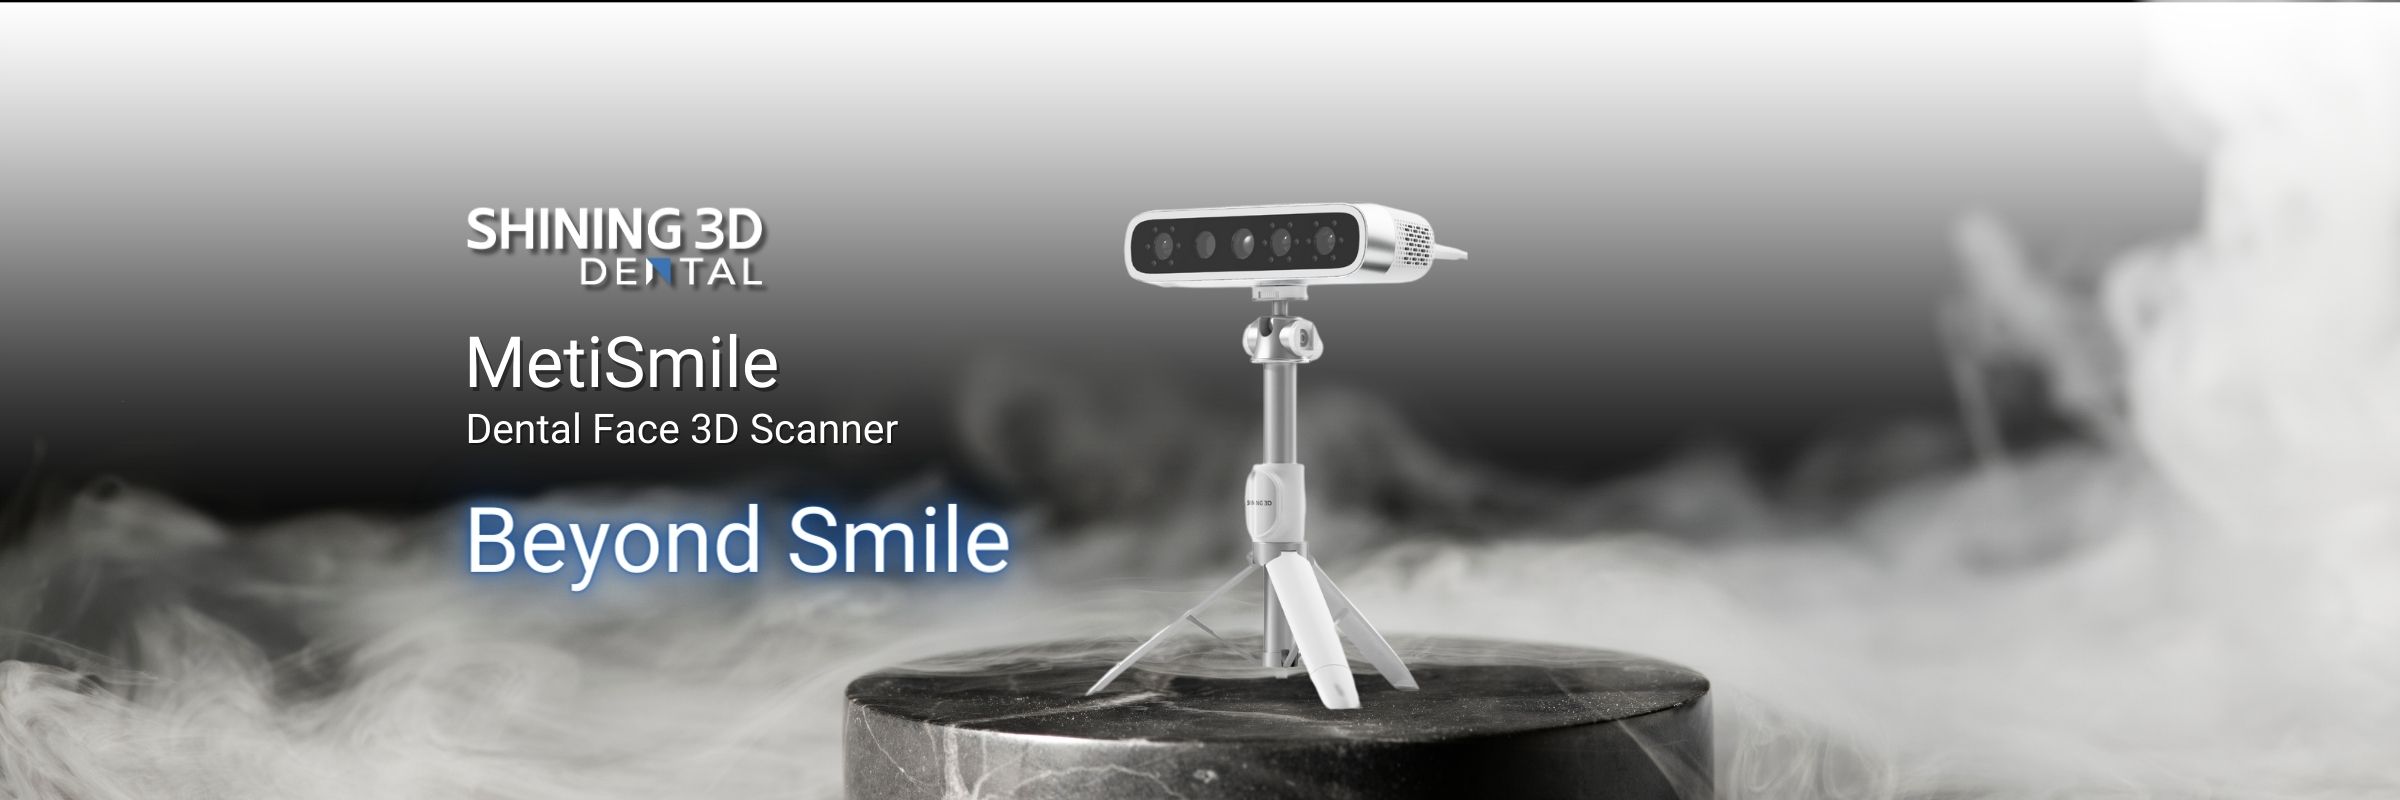 Shinning 3D MetiSmile Dental Face 3D Scanner Product Page Banner